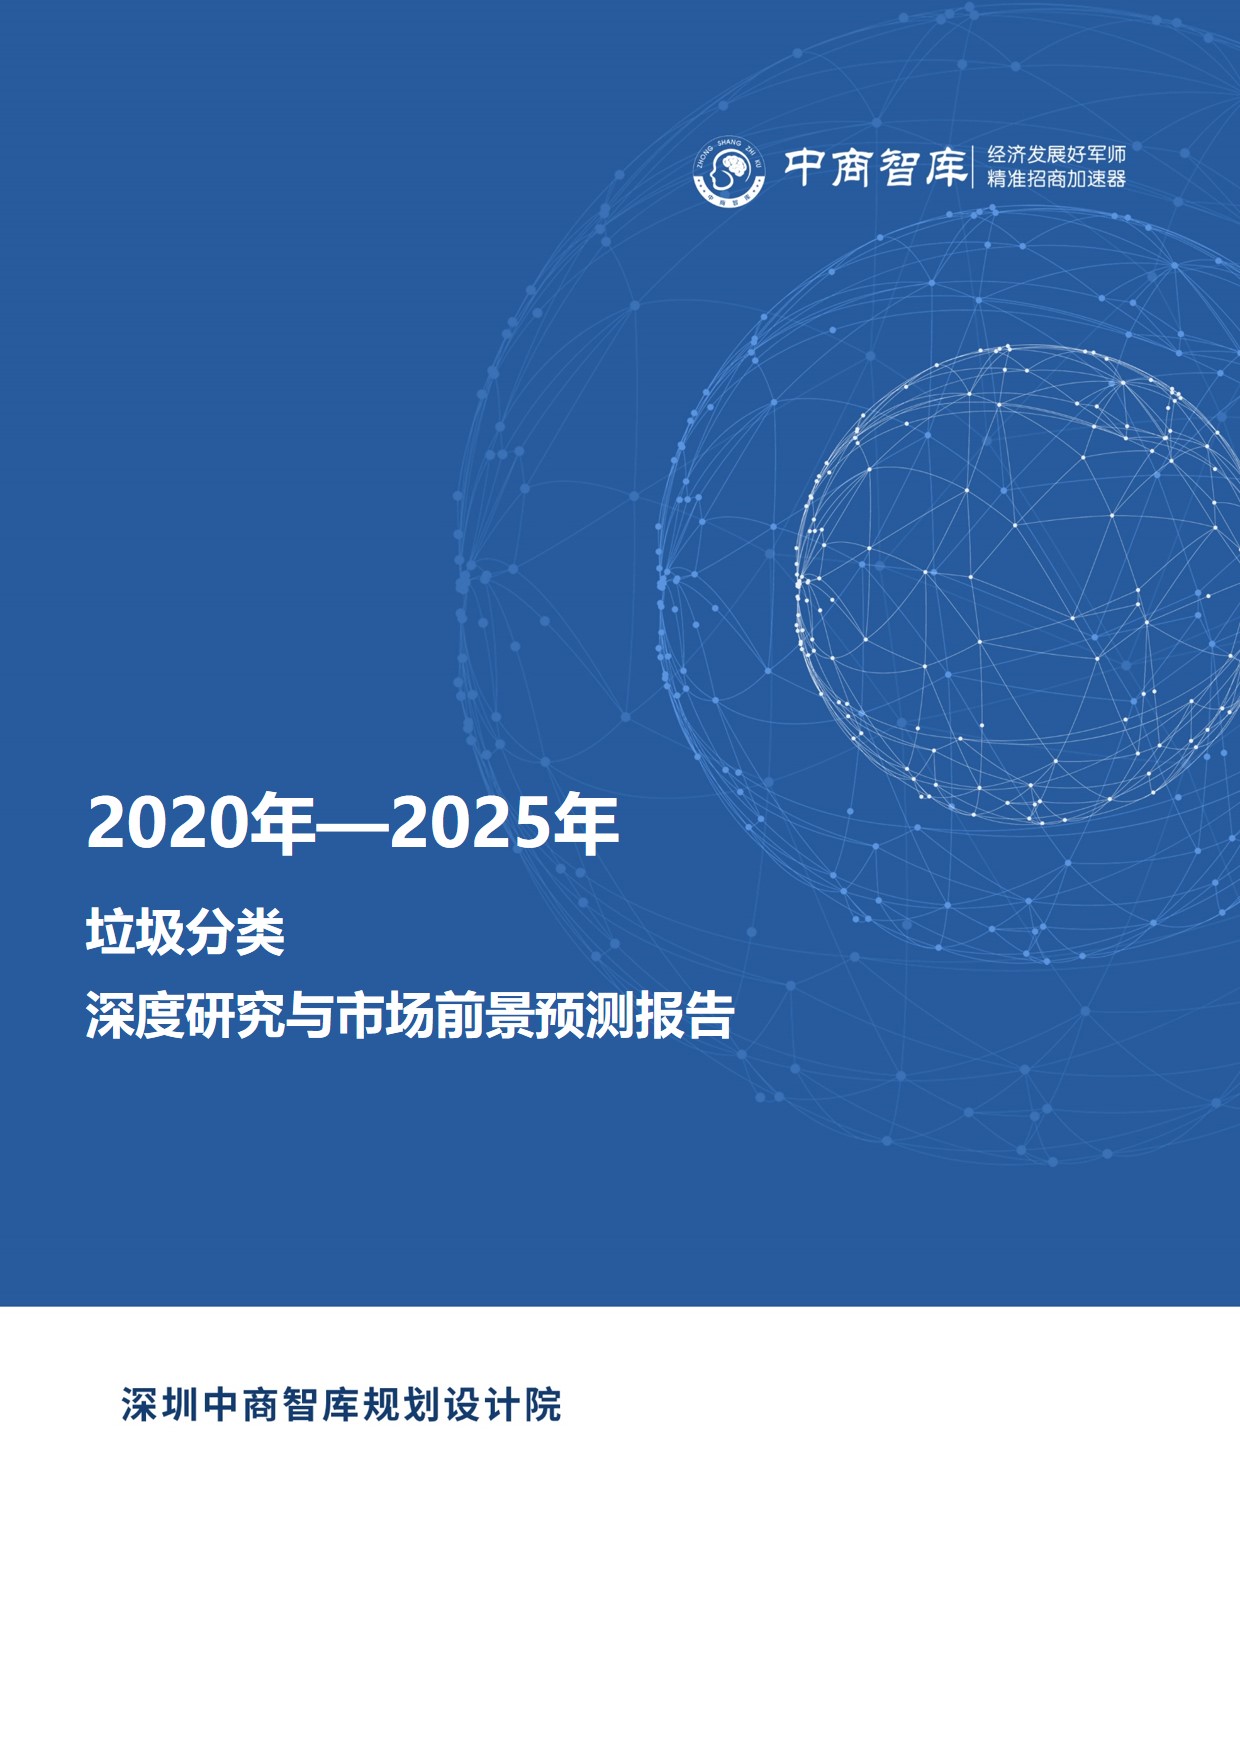 《2020-2025年垃圾分类行业深度研究与市场前景预测报告》